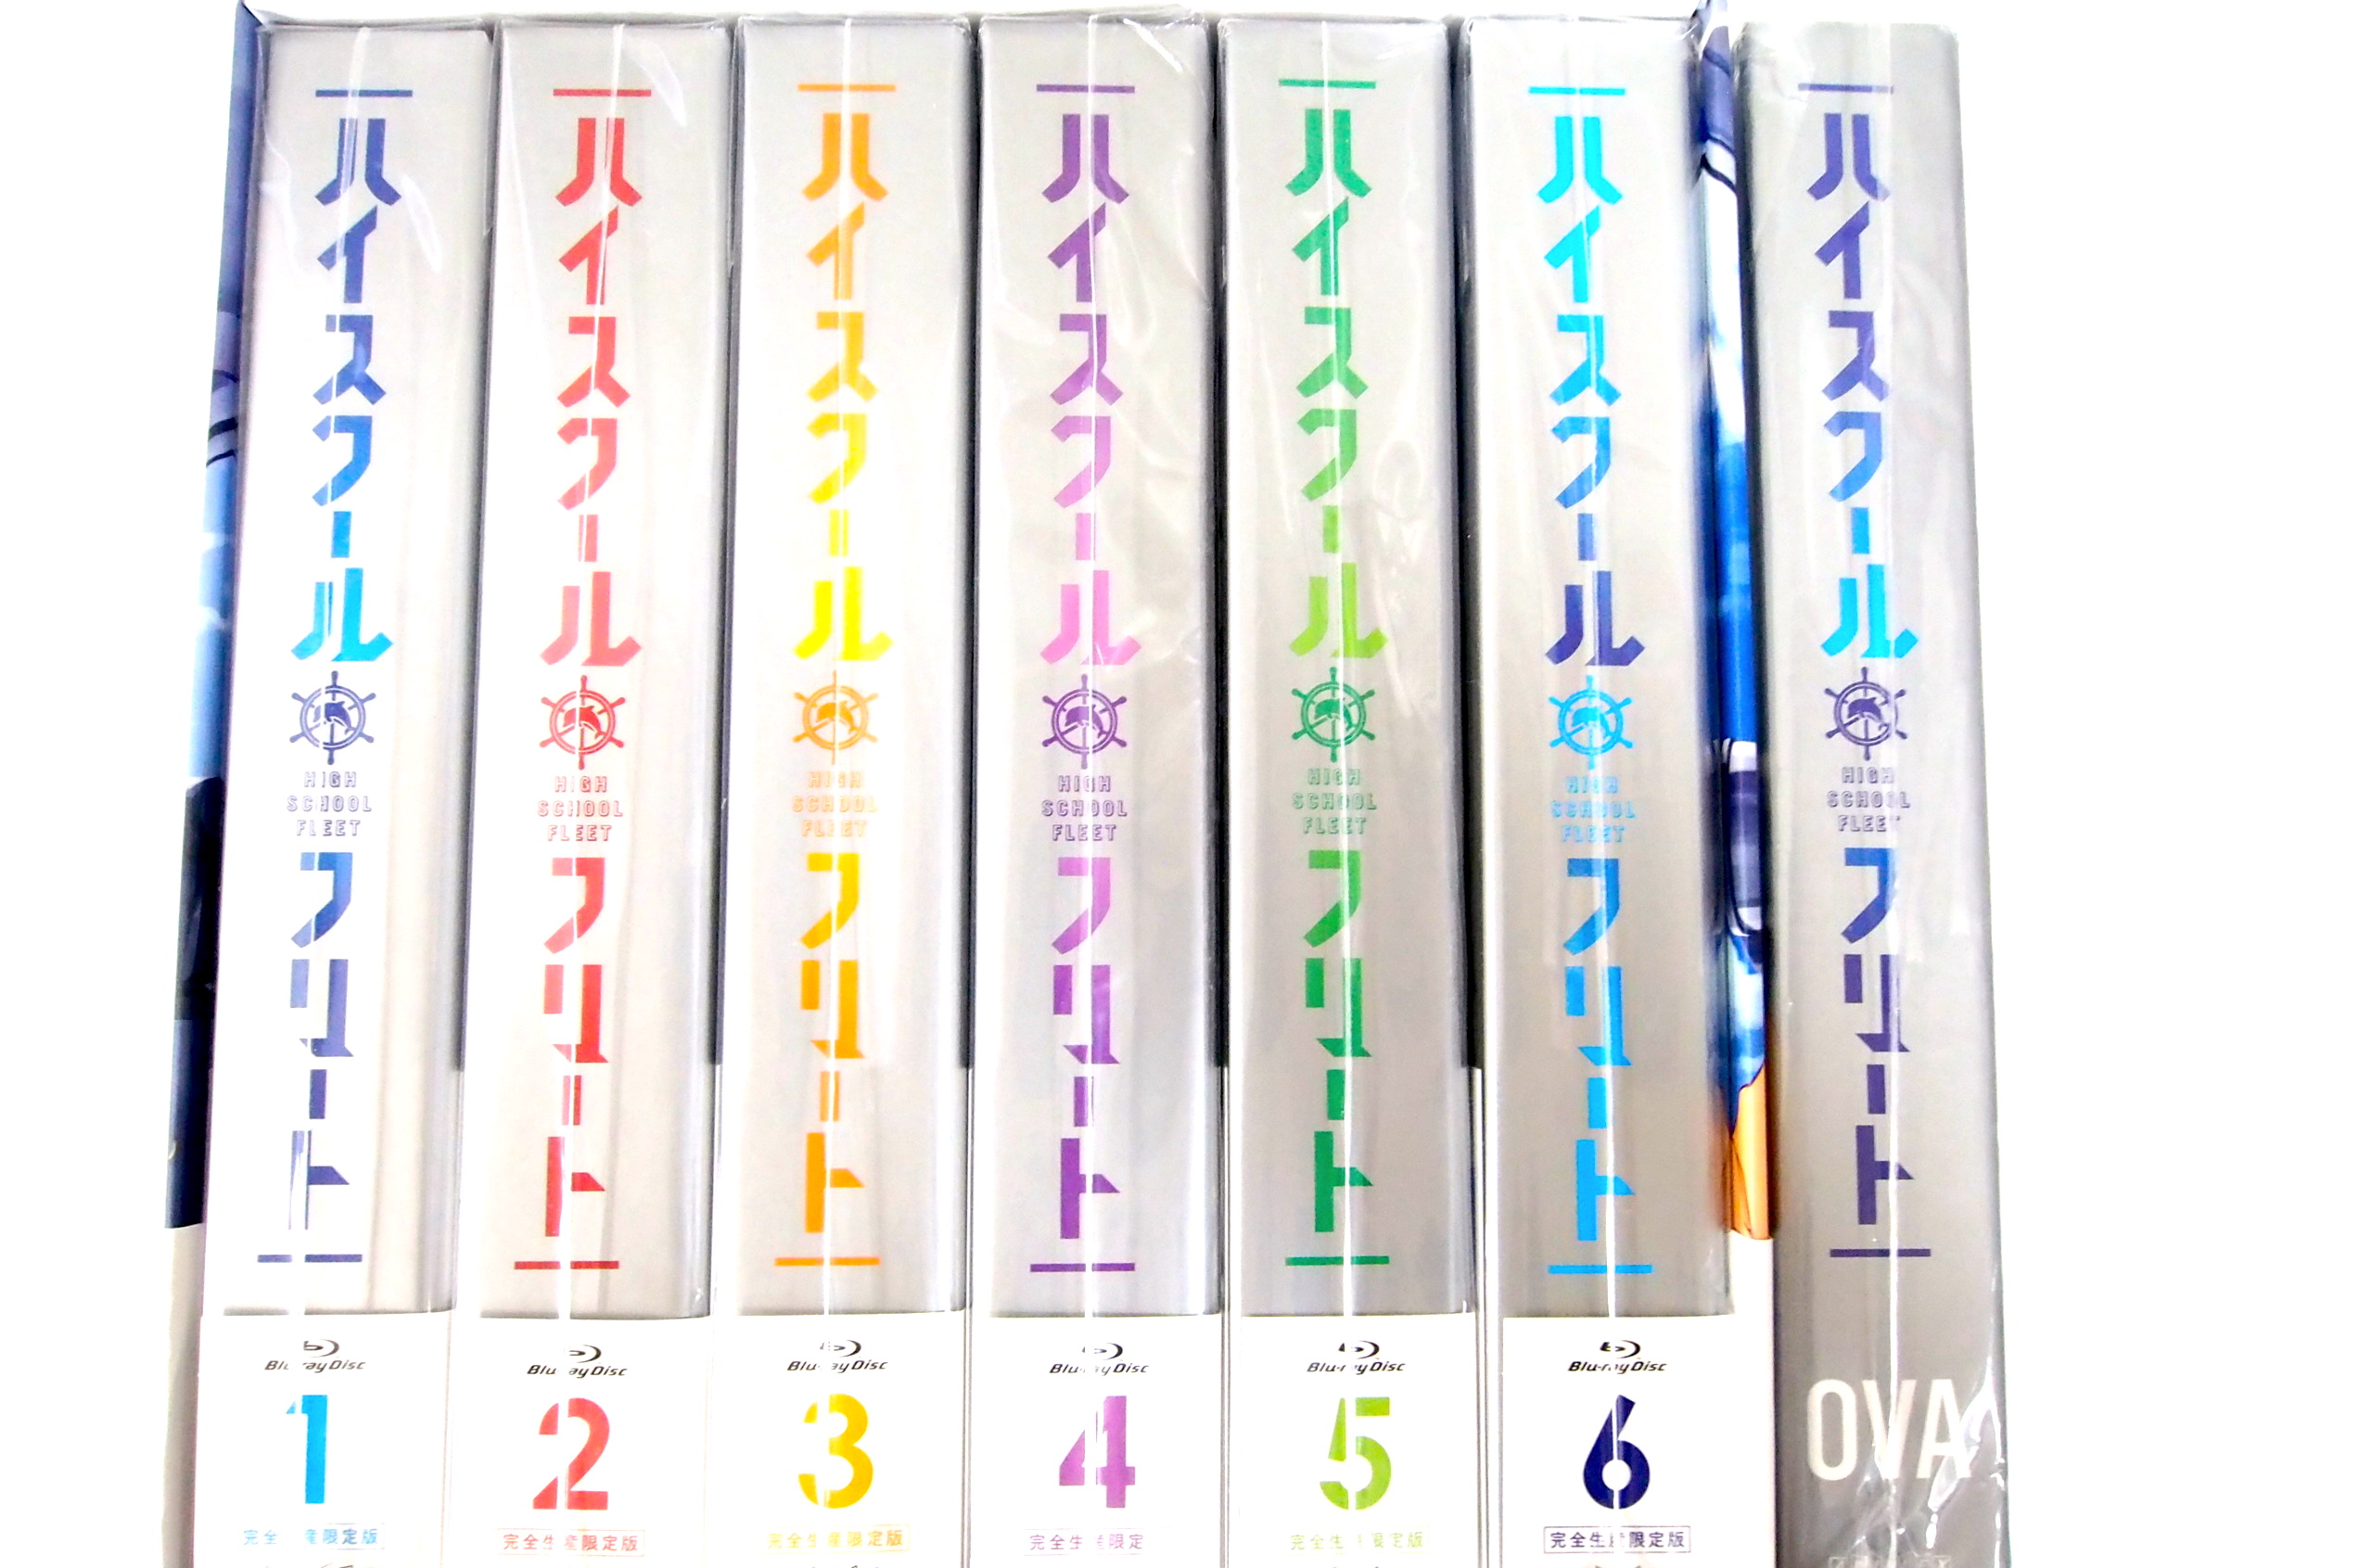 ハイスクール・フリート 全6巻&OVA 限定版セットブルーレイ 高価買取